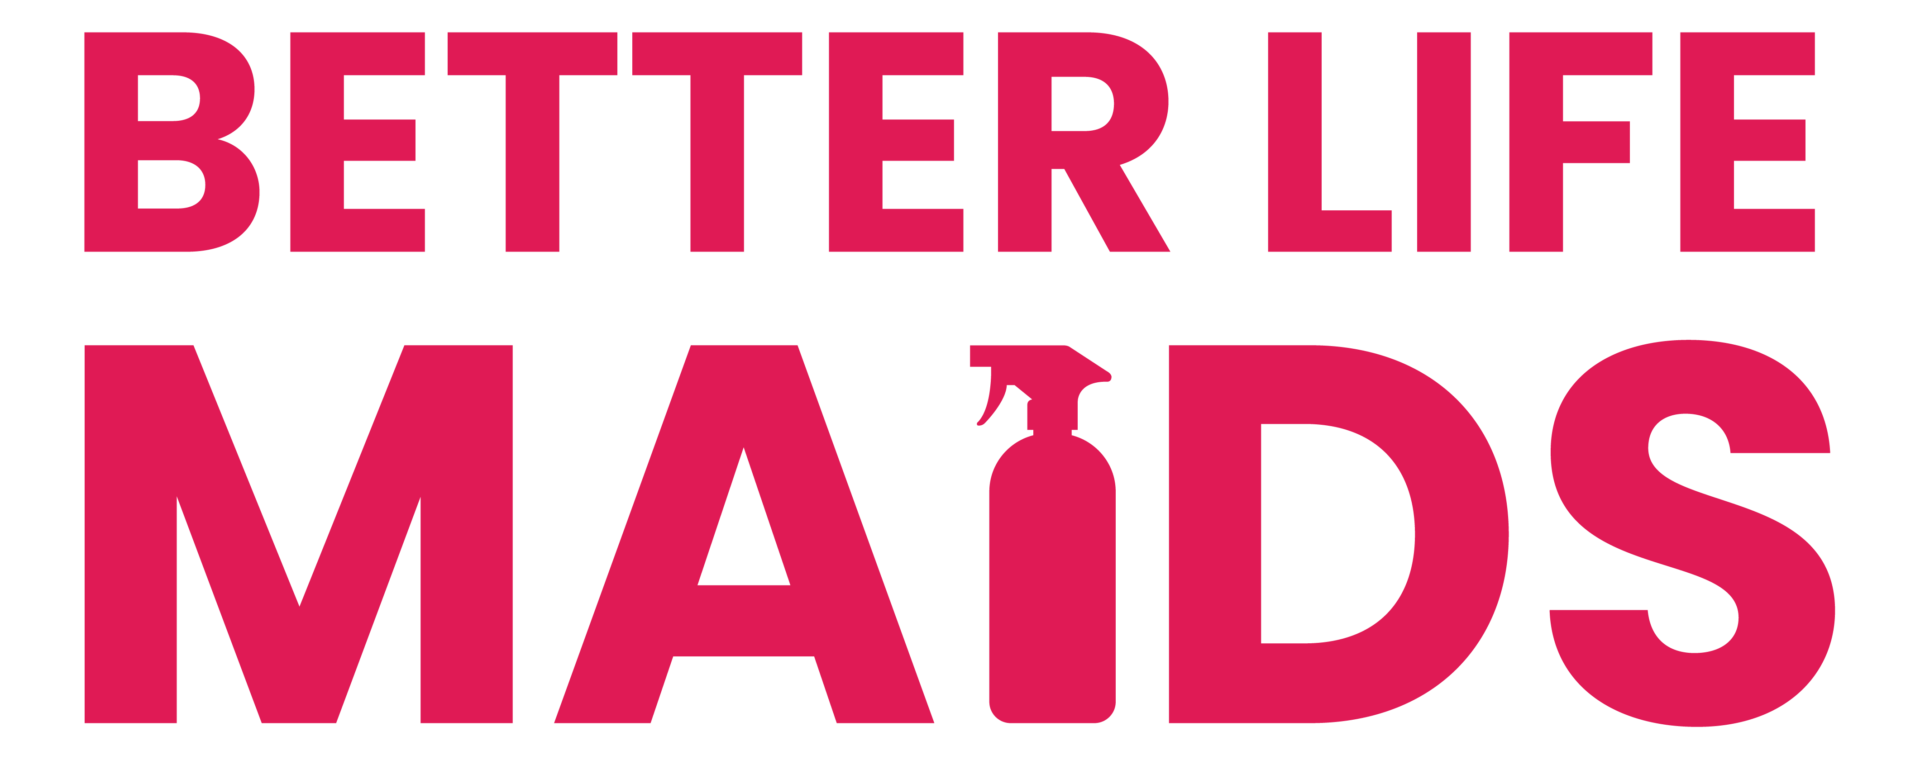 Better Life Maids Logo